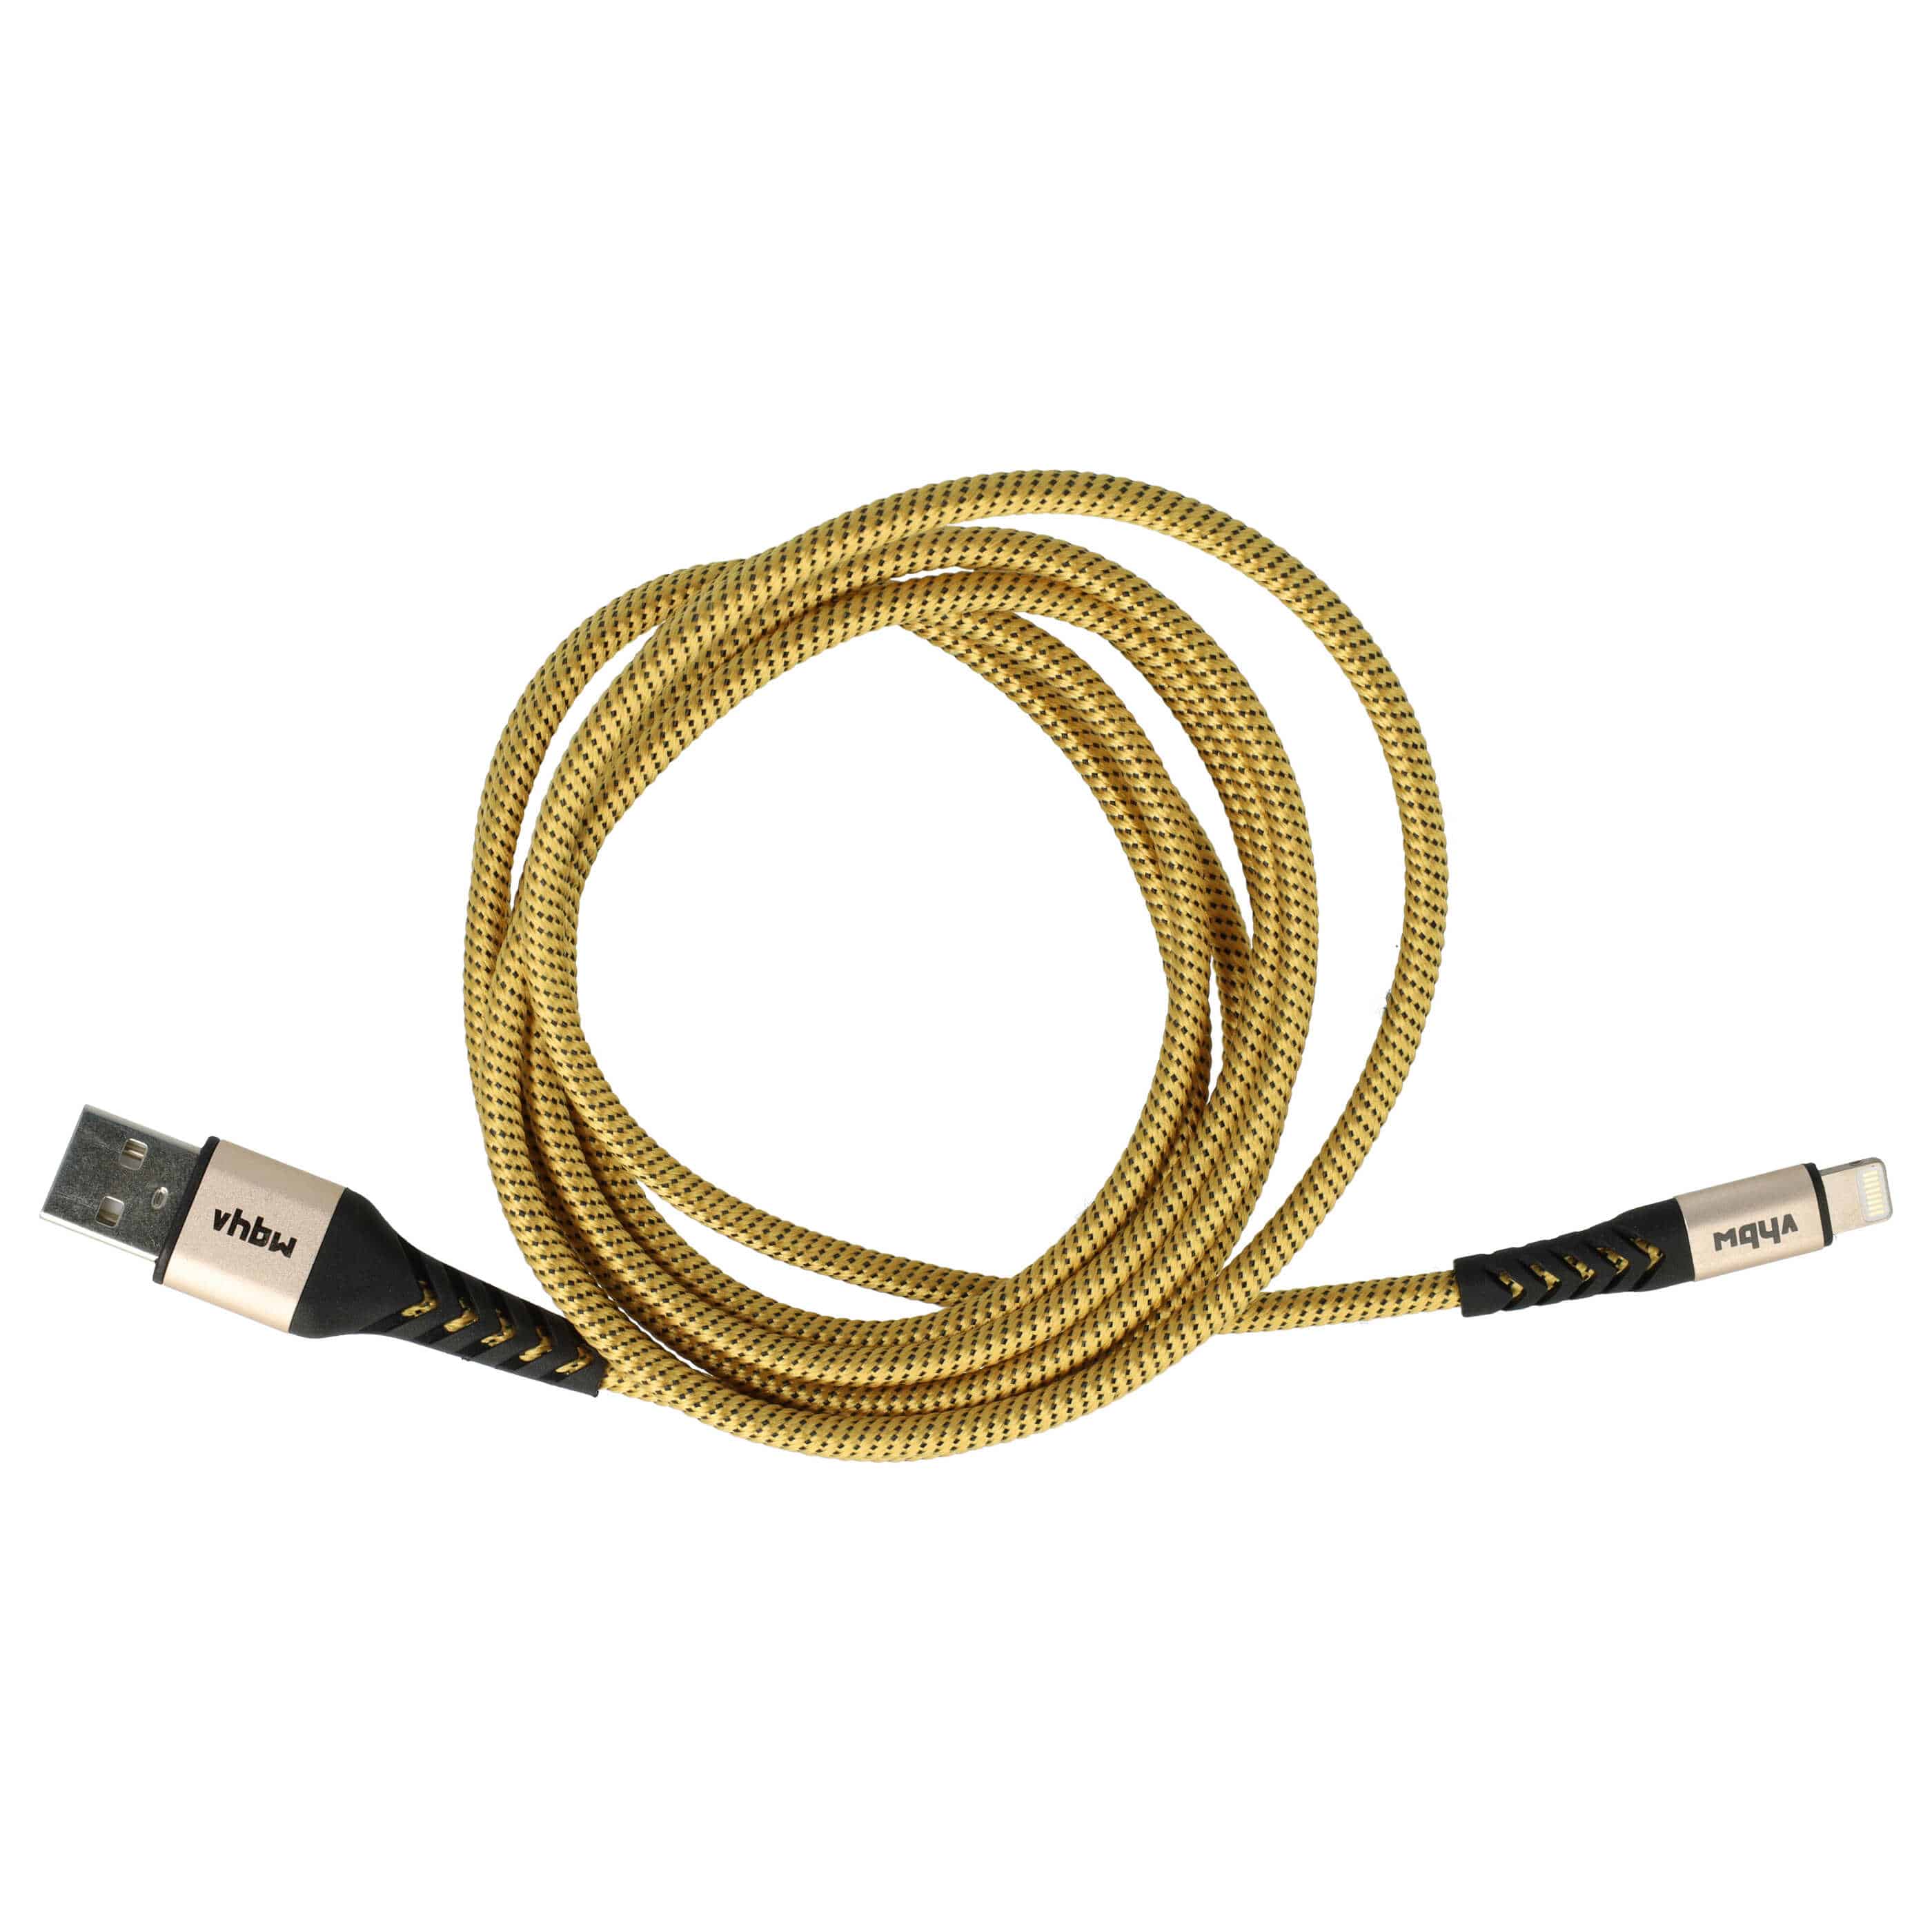 Kabel Lightning USB A do urządzeń iOS 1. generacji - żółty / czarny, 180 cm 